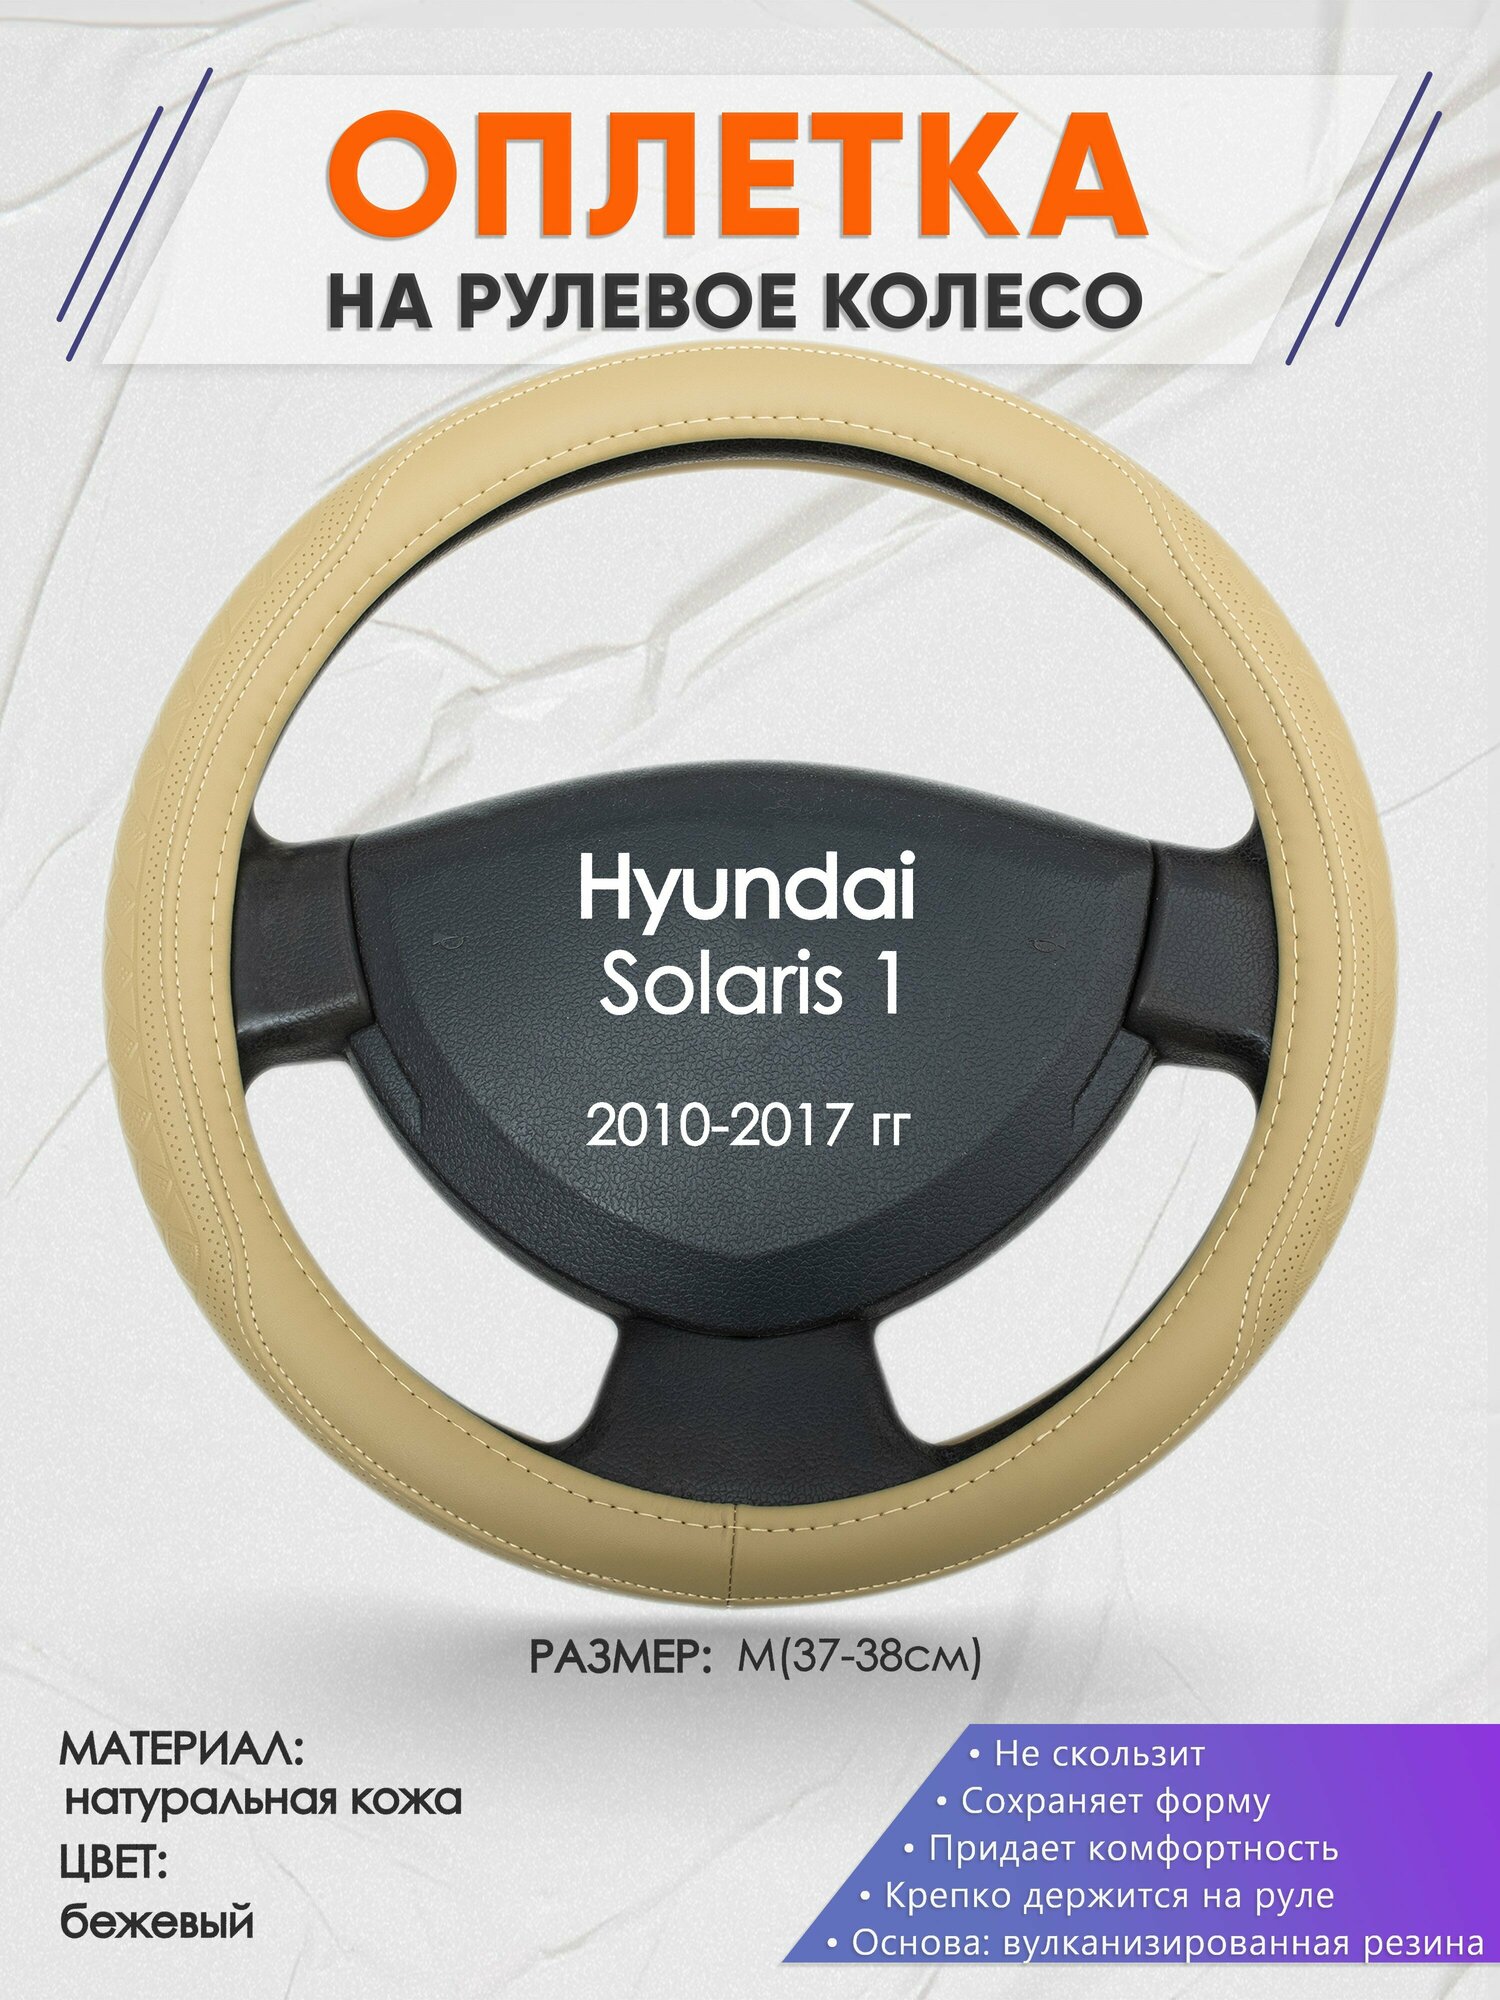 Оплетка на руль для Hyundai Solaris 1(Хендай Солярис 1) 2010-2017, M(37-38см), Натуральная кожа 91